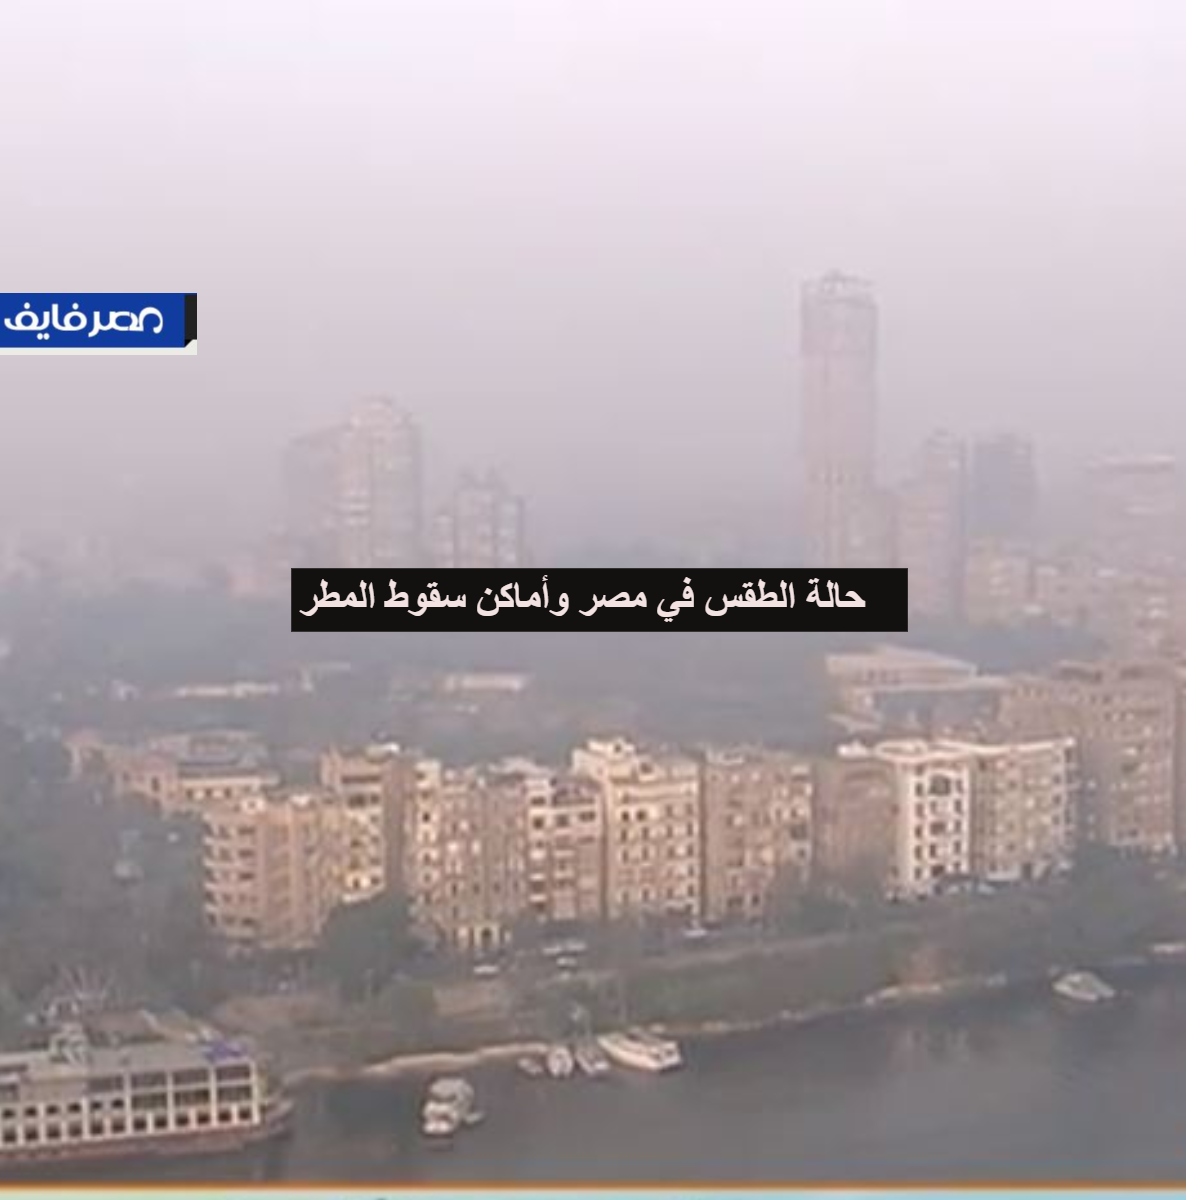 حالة الطقس في مصر السبت الموافق 15-2-2020 وأماكن سقوط المطر المتوقعة من الأرصاد الجوية